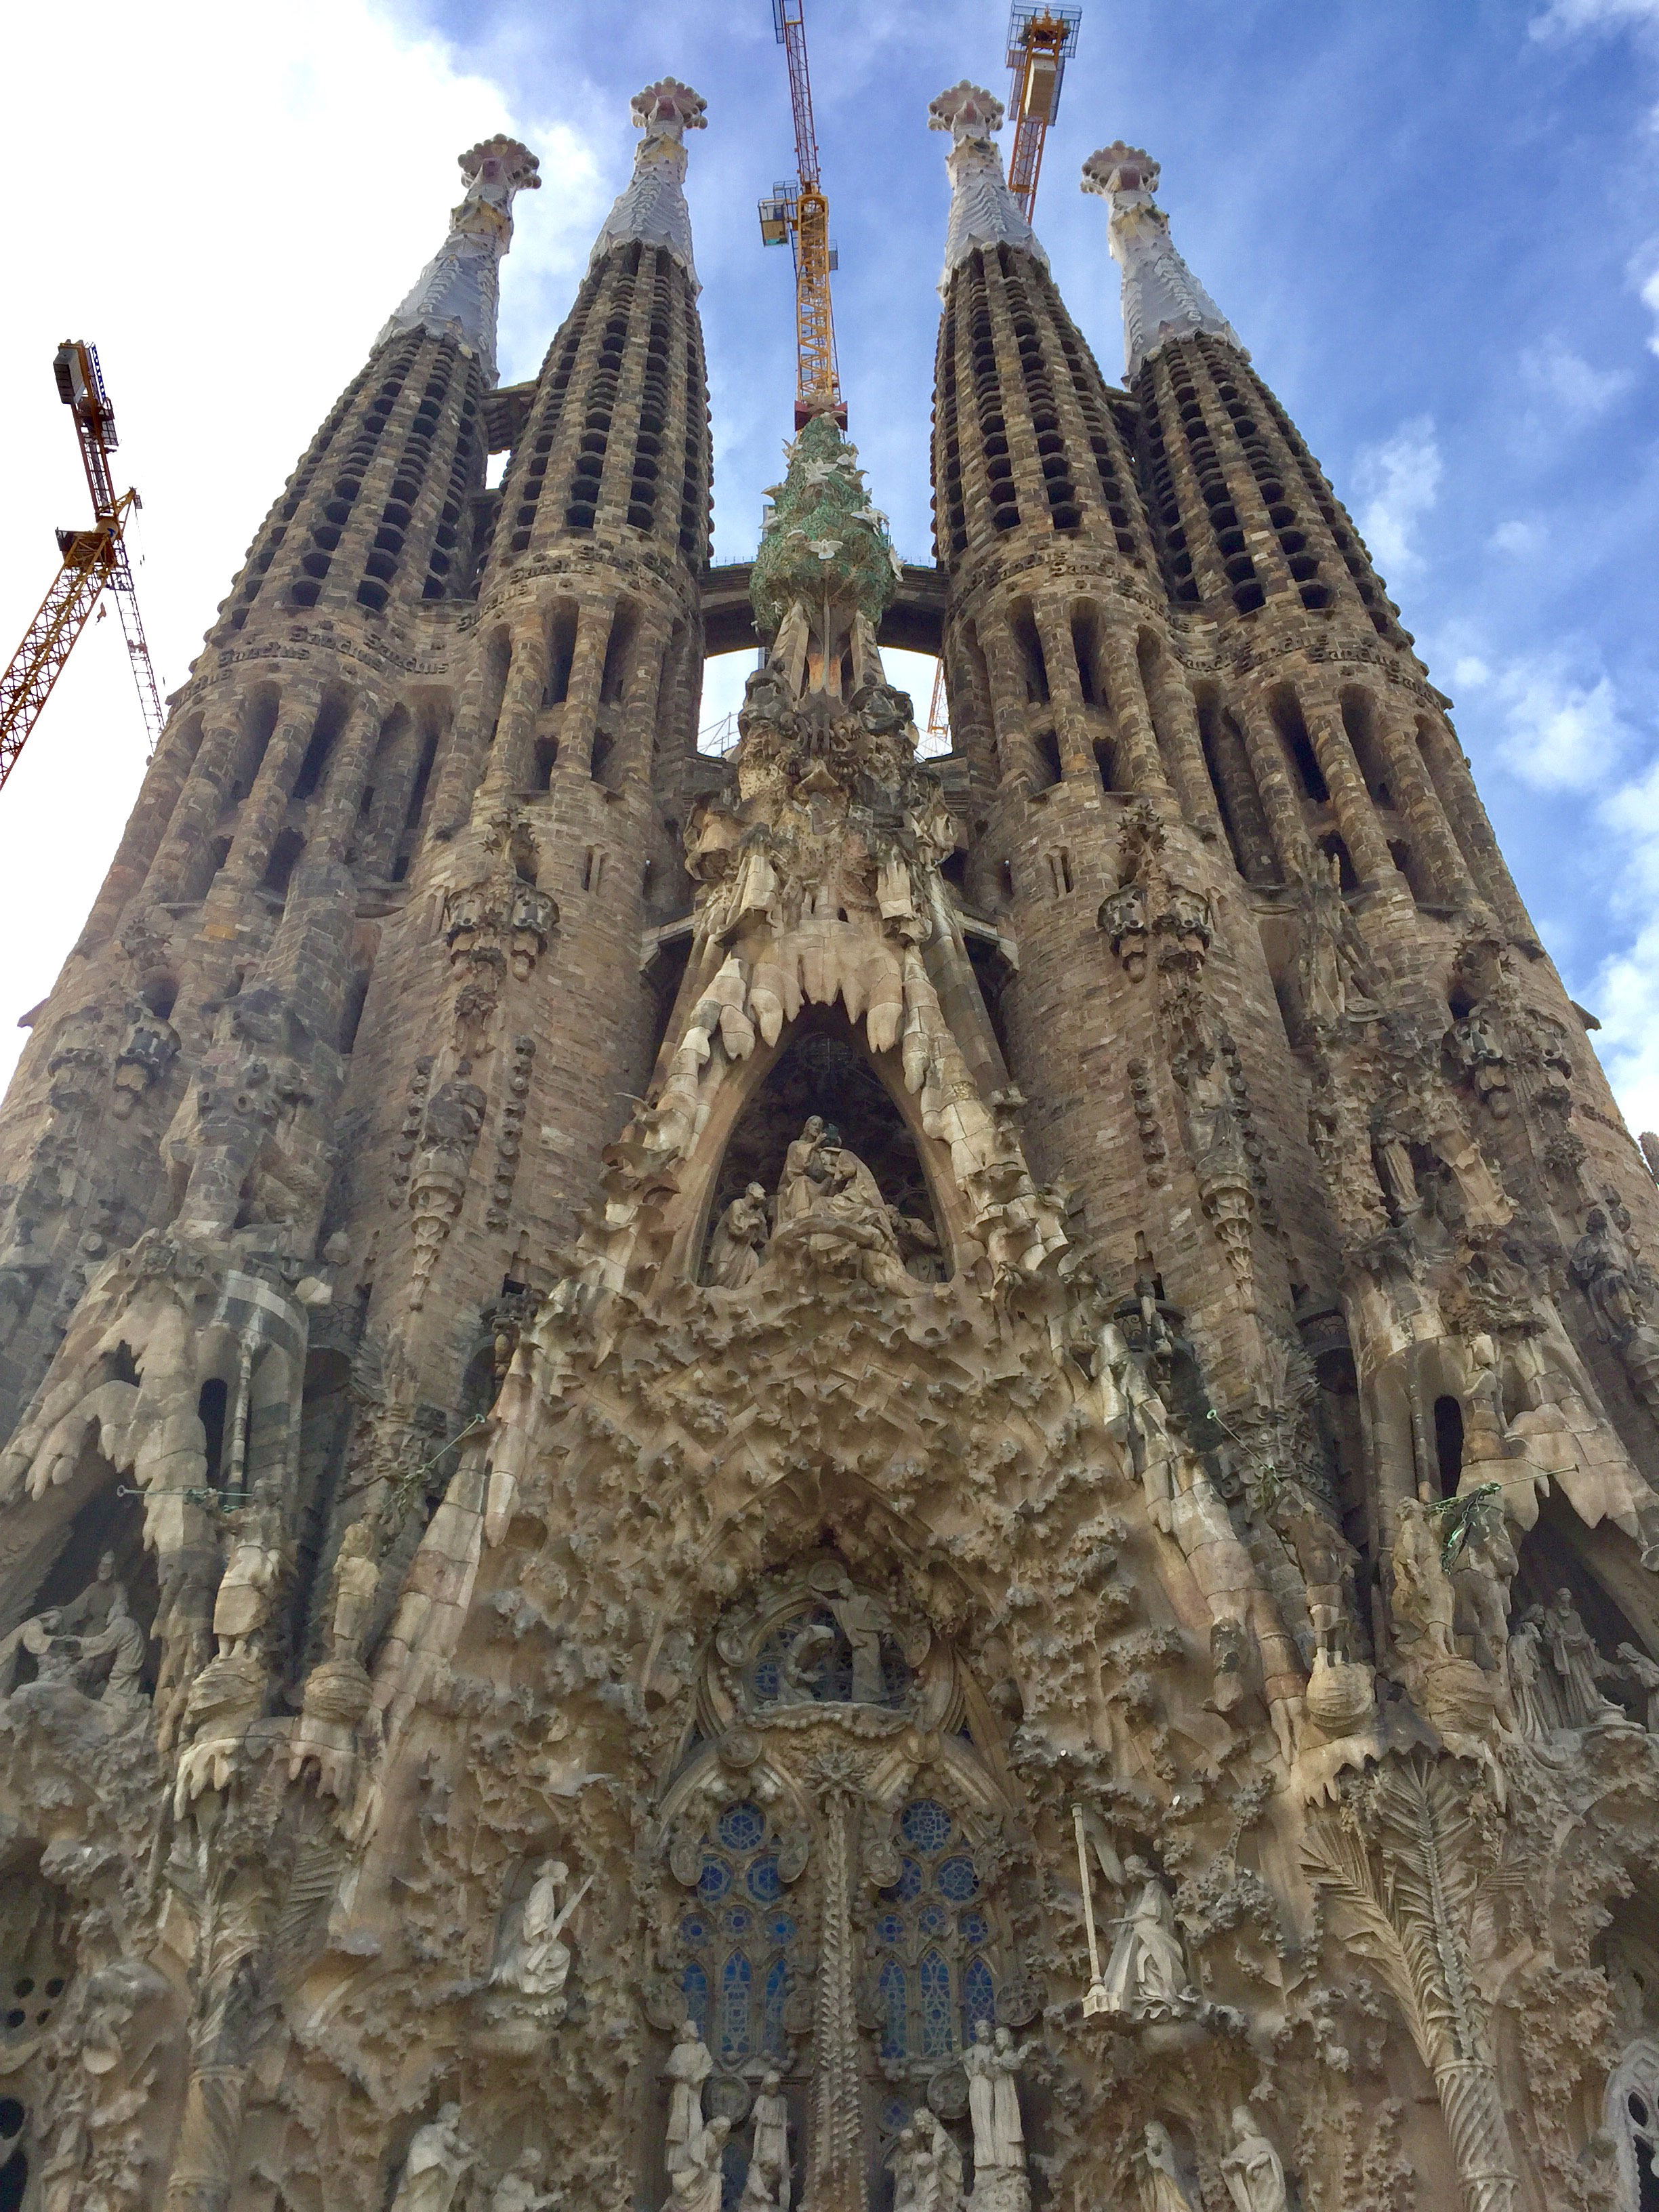 Sagrada Familia – Nativity facade